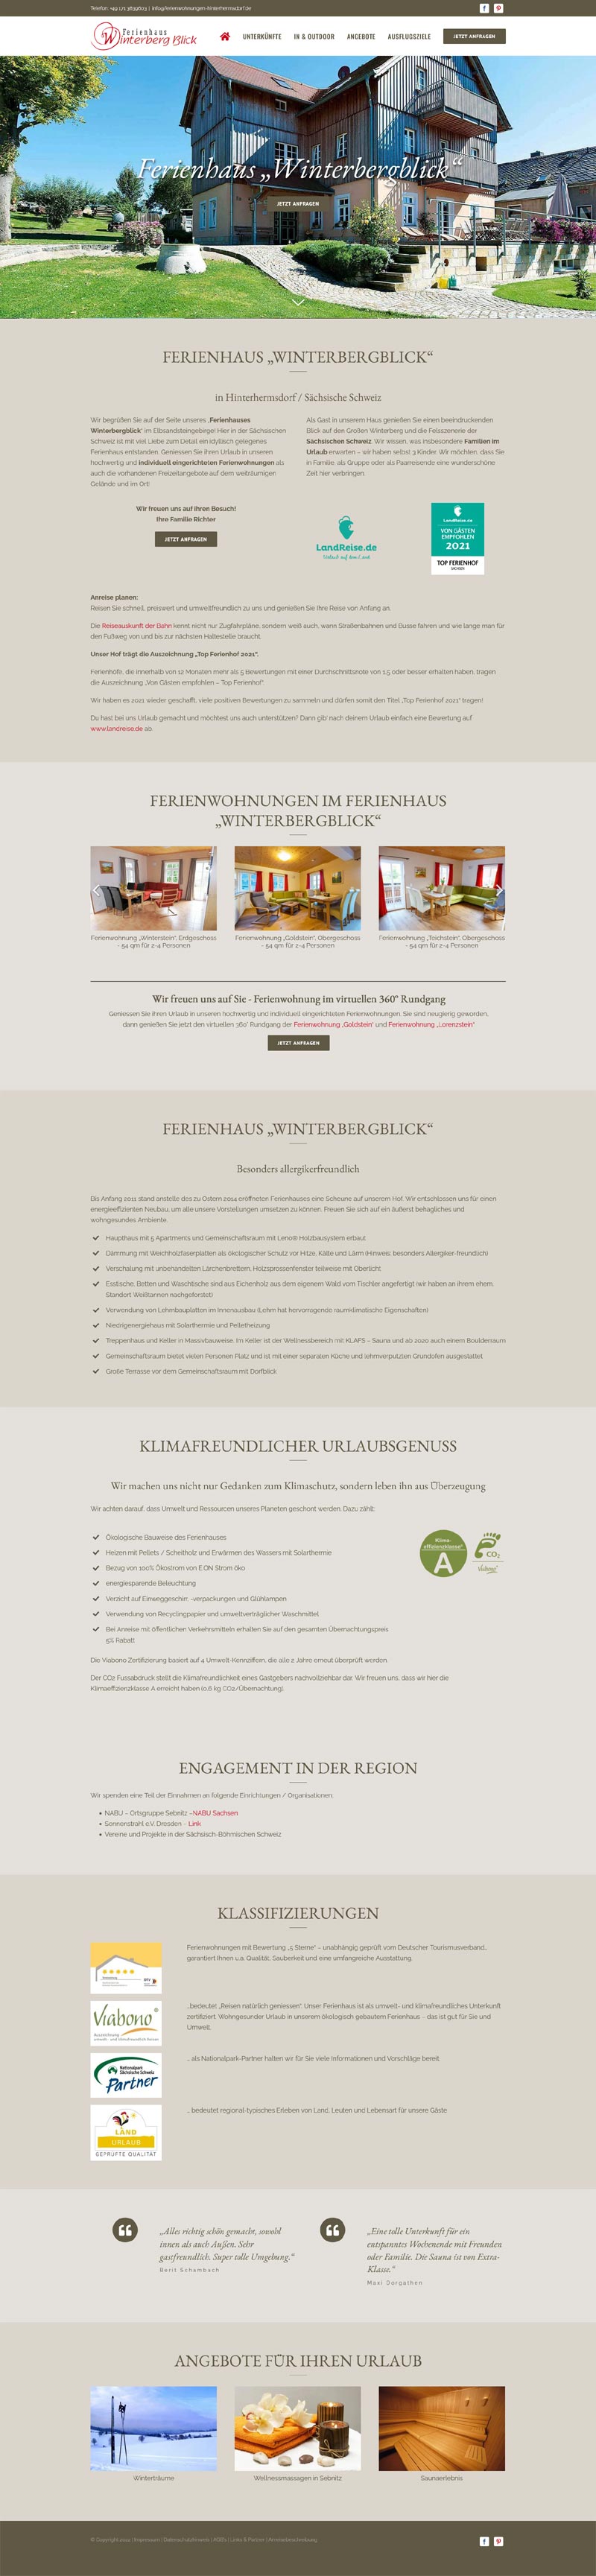 Ferienwohnung Hinterhermsdorf Screenshot Fullsize Startseite